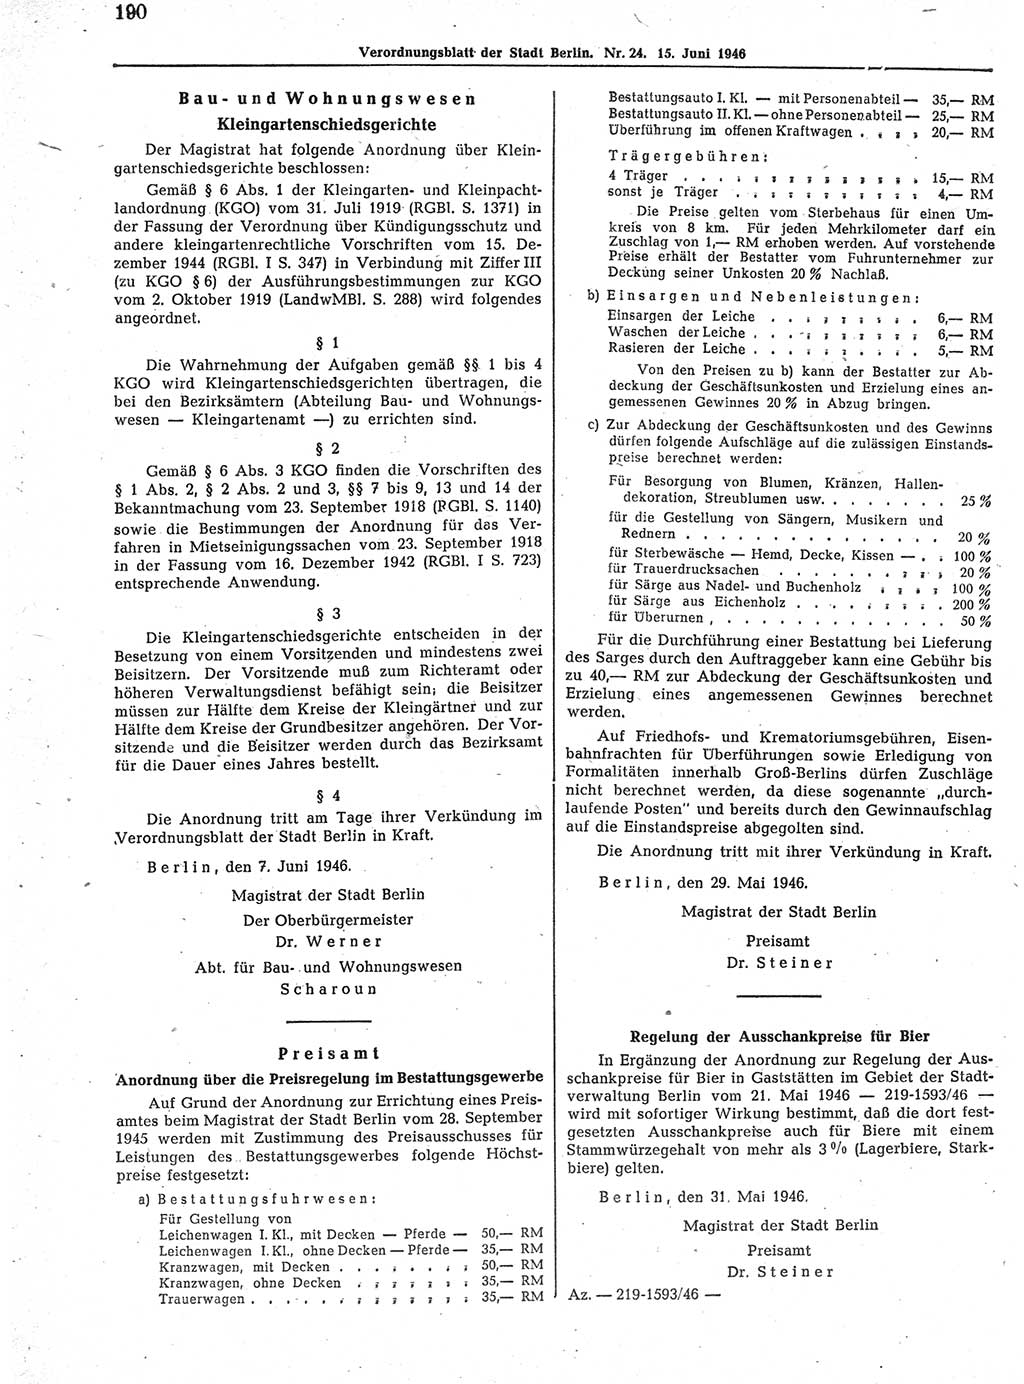 Verordnungsblatt (VOBl.) der Stadt Berlin, für Groß-Berlin 1946, Seite 190 (VOBl. Bln. 1946, S. 190)